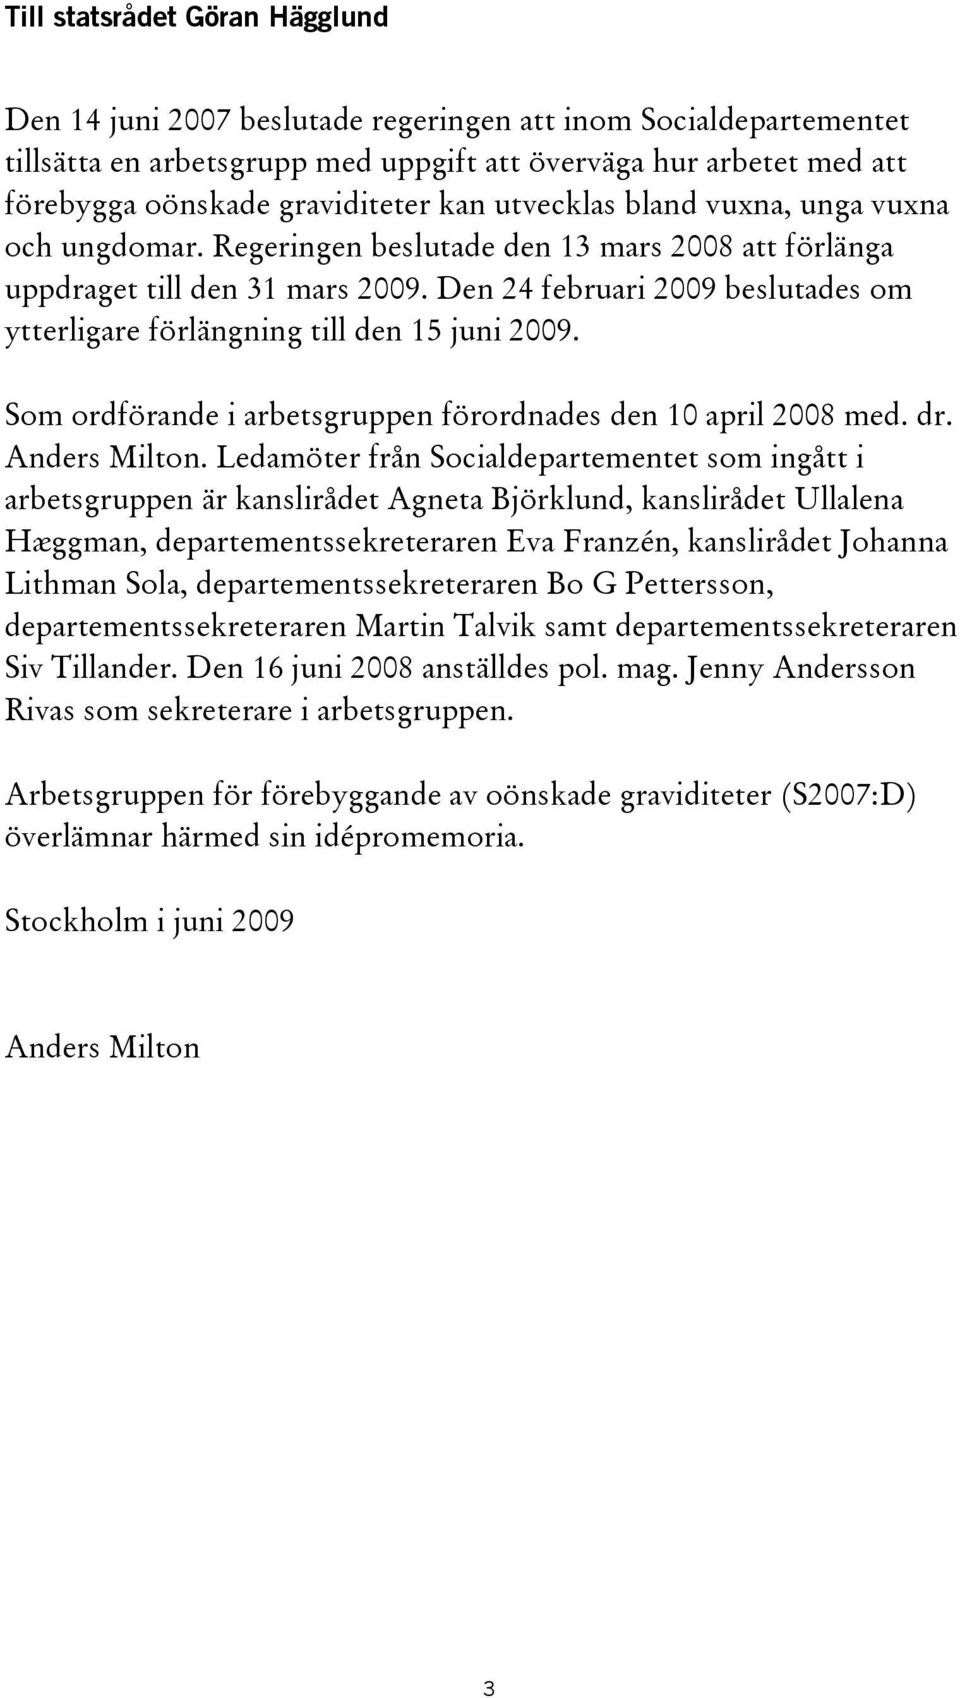 Den 24 februari 2009 beslutades om ytterligare förlängning till den 15 juni 2009. Som ordförande i arbetsgruppen förordnades den 10 april 2008 med. dr. Anders Milton.